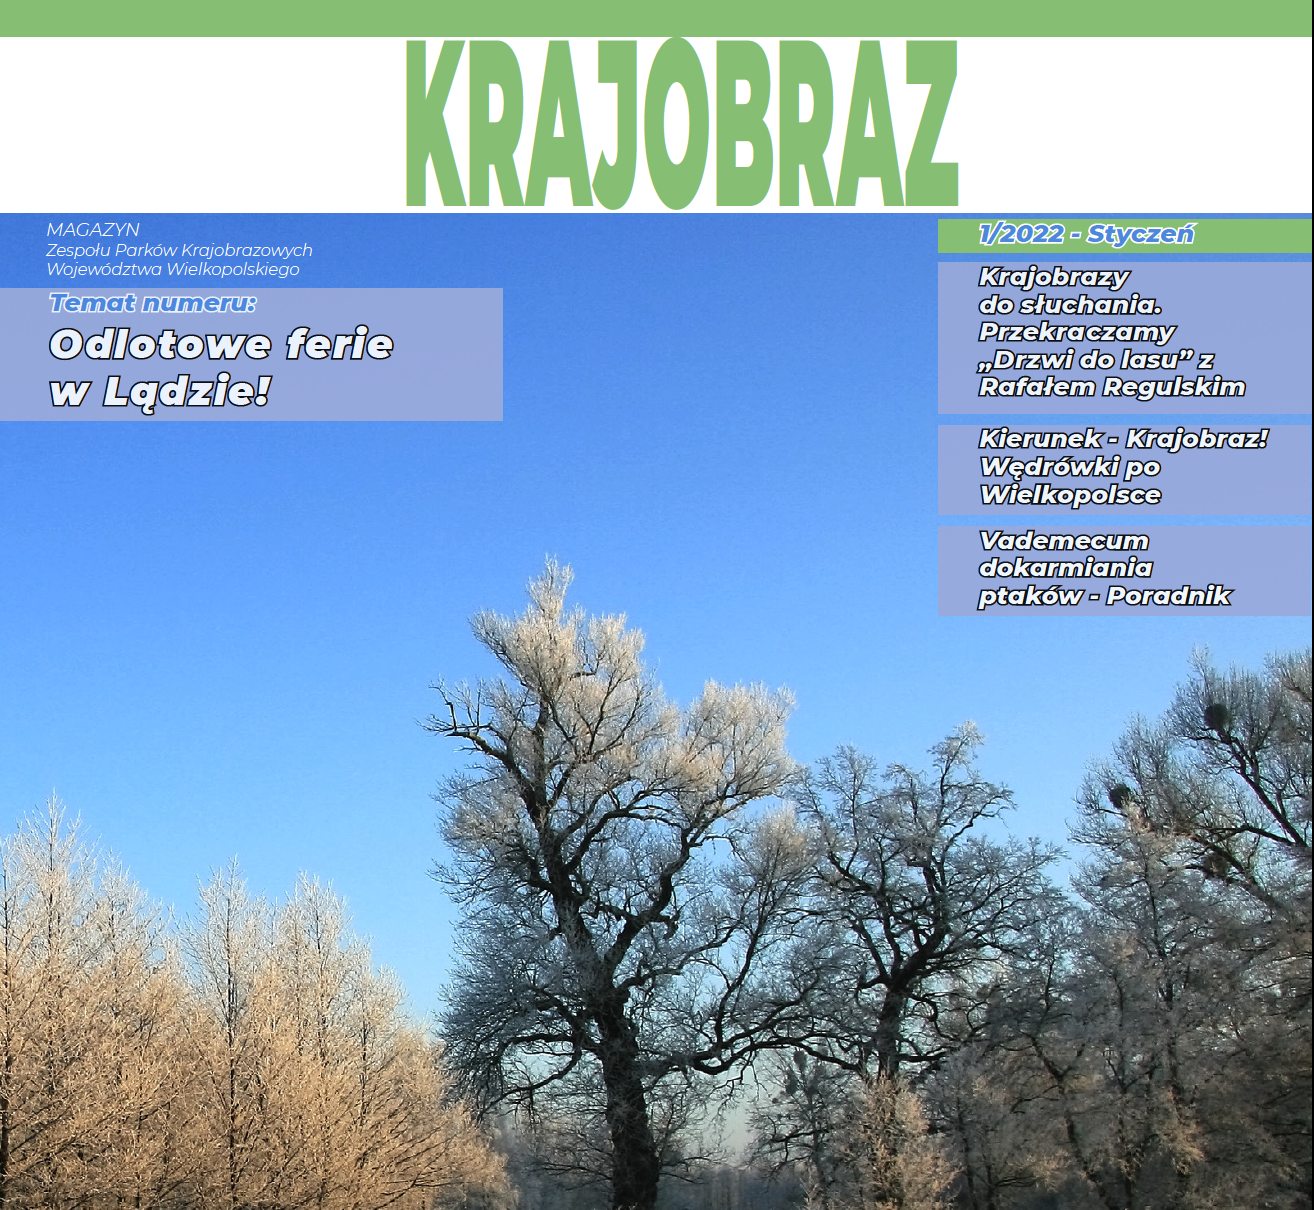 Okładka magazynu, tytuł KRJAOBRAZ, drzewo i trzciny białe od szronu.